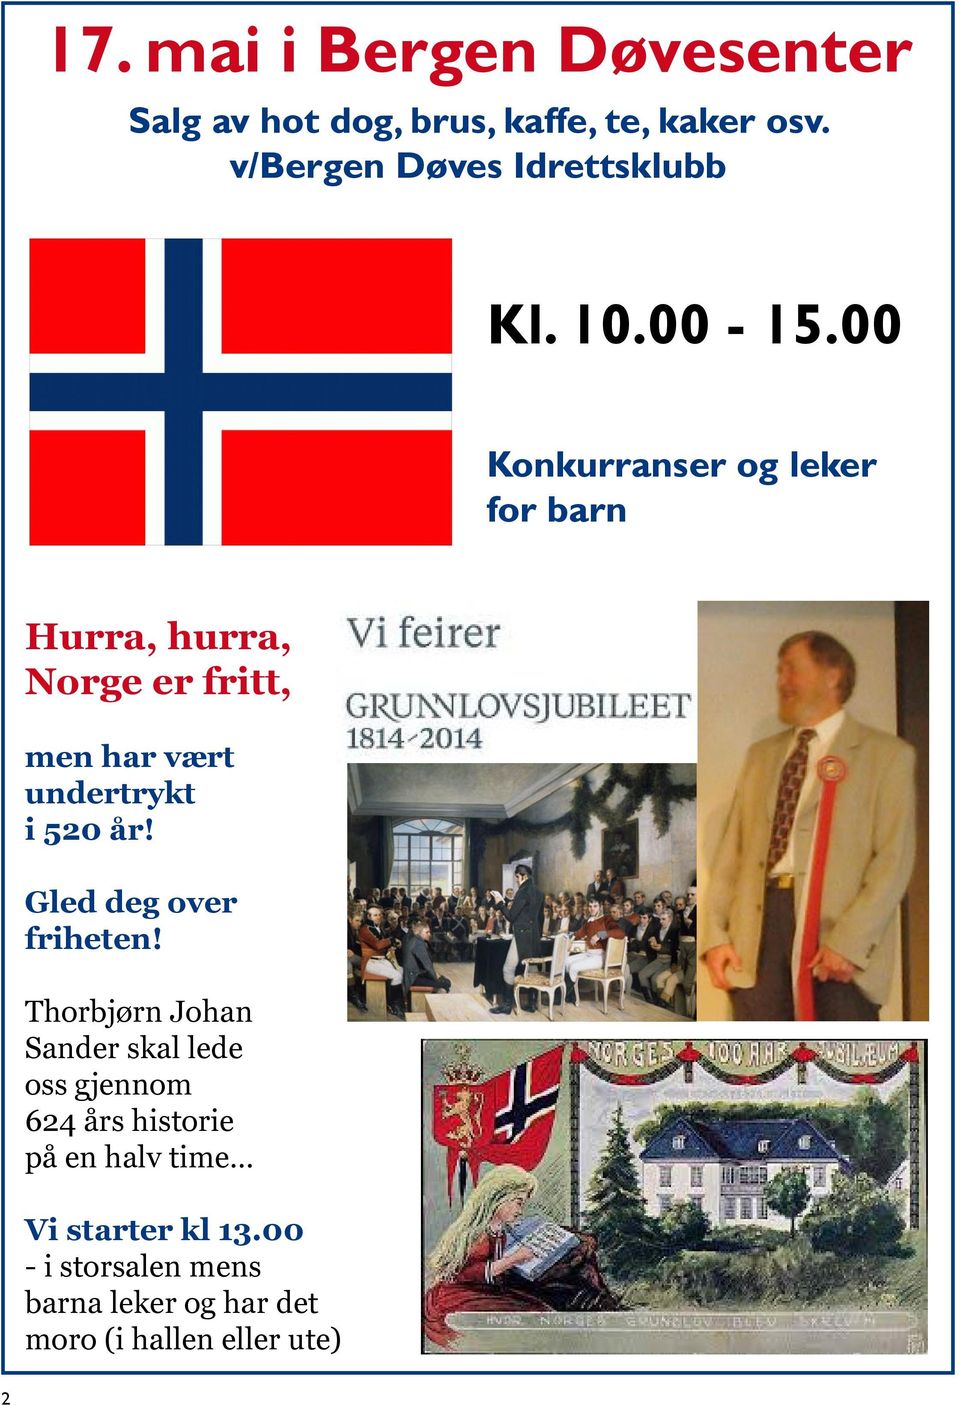 00 Konkurranser og leker for barn Hurra, hurra, Norge er fritt, men har vært undertrykt i 520 år!